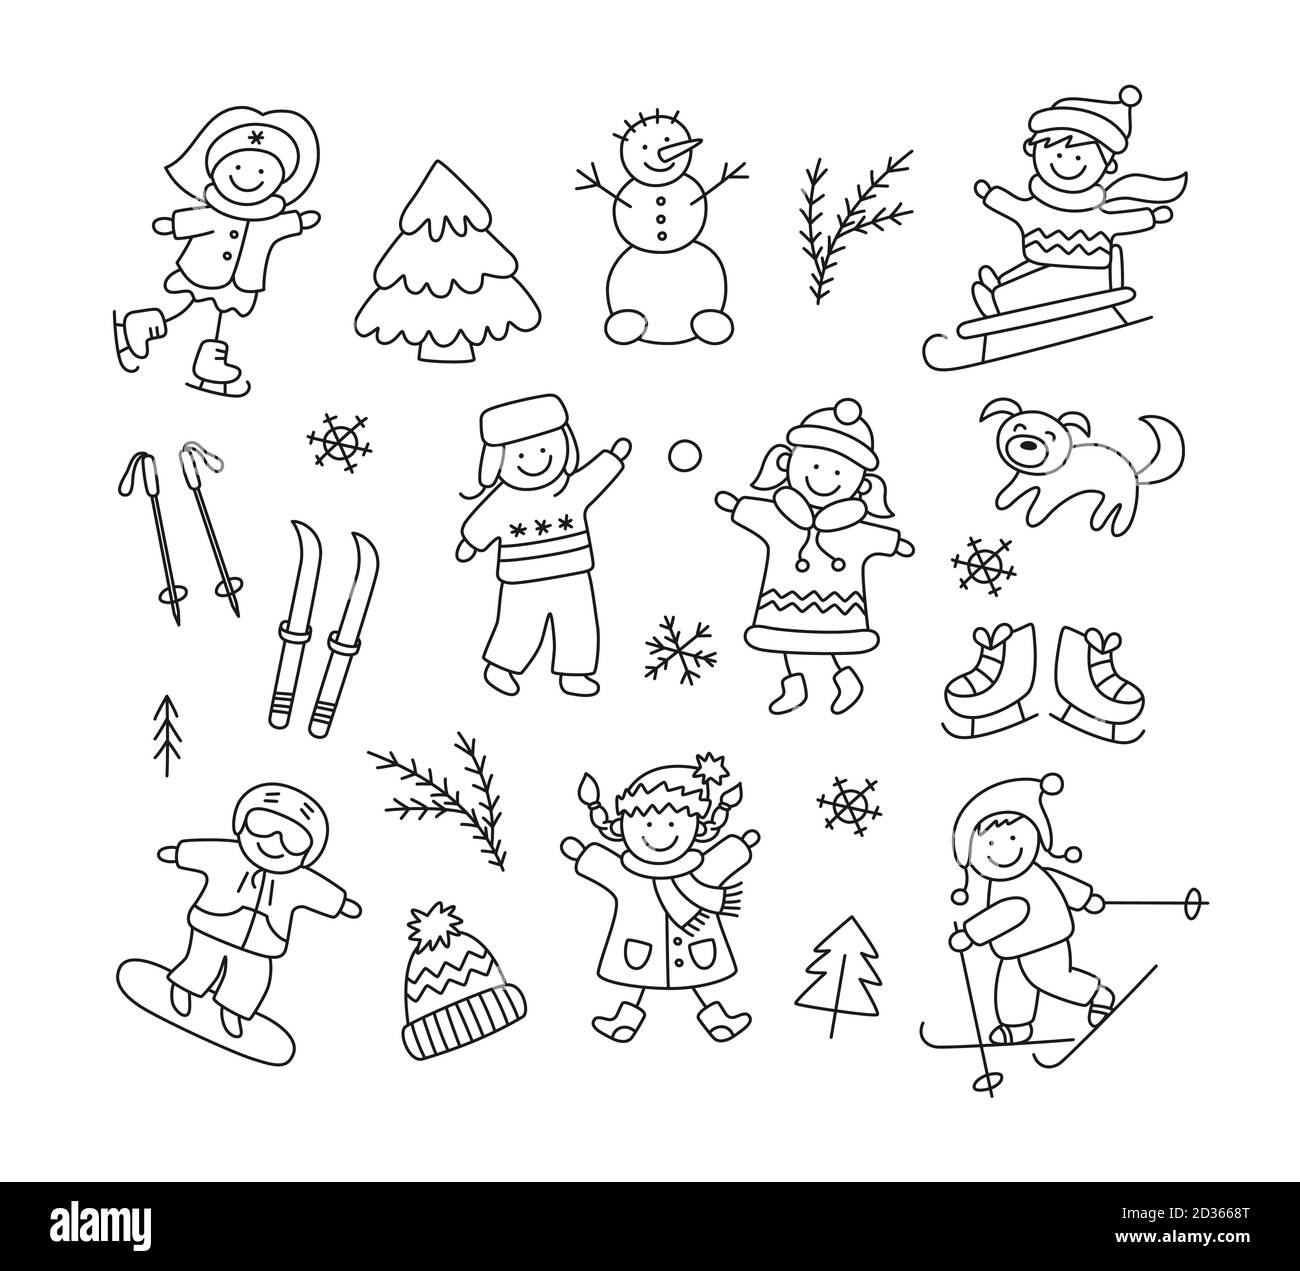 Enfants jouant dans la neige, traîneau à chiens, ski, patinage, surf des neiges et des objets d'hiver. Illustration de Vecteur